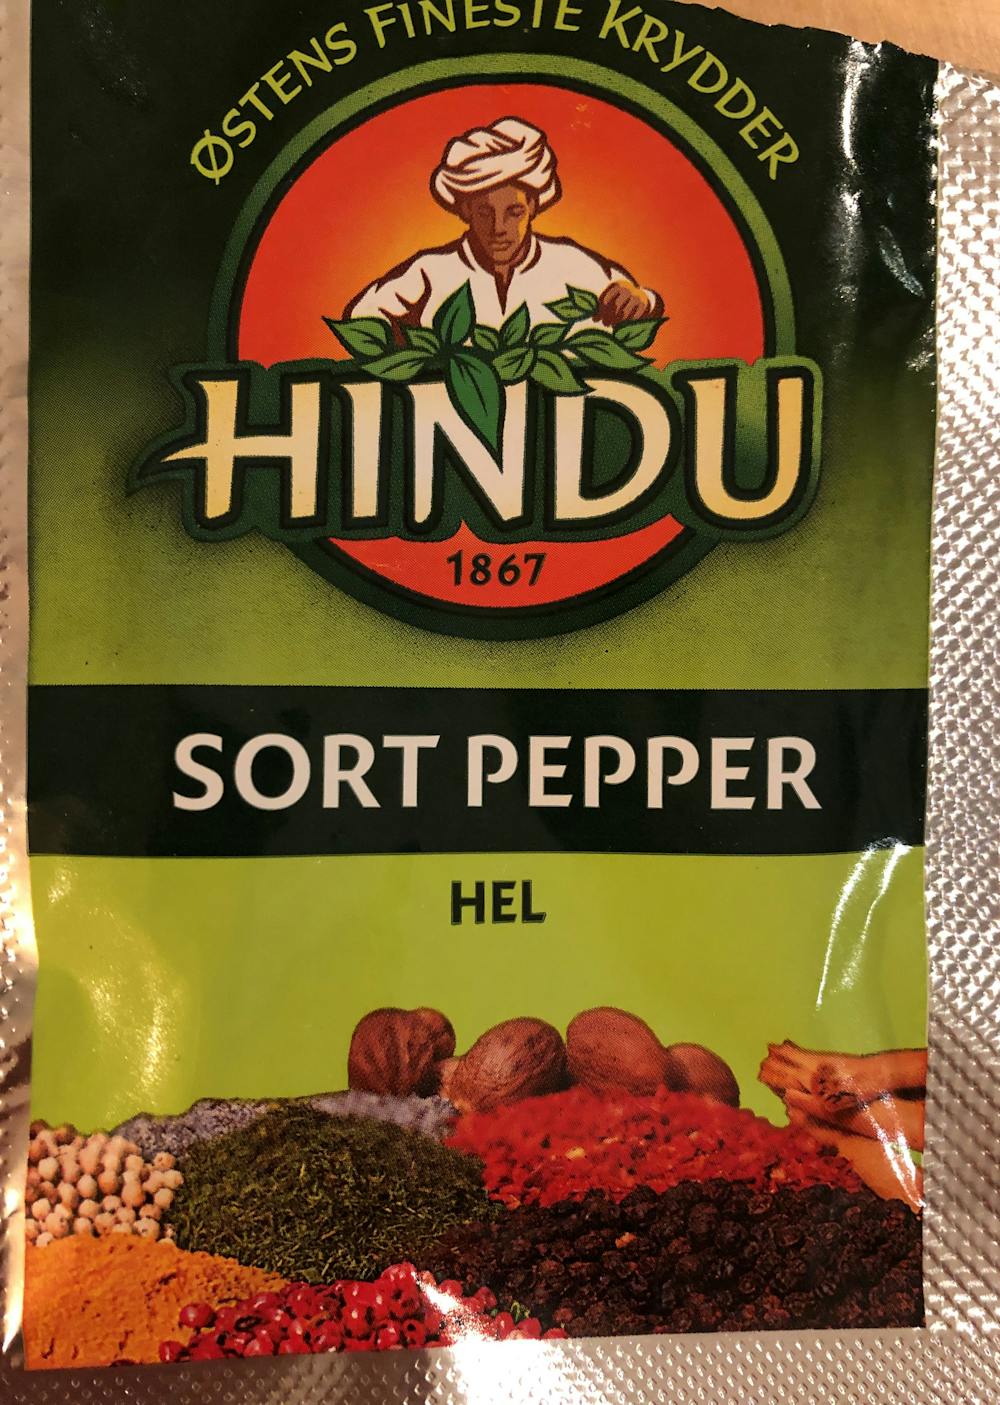 Sort pepper, hel, Hindu